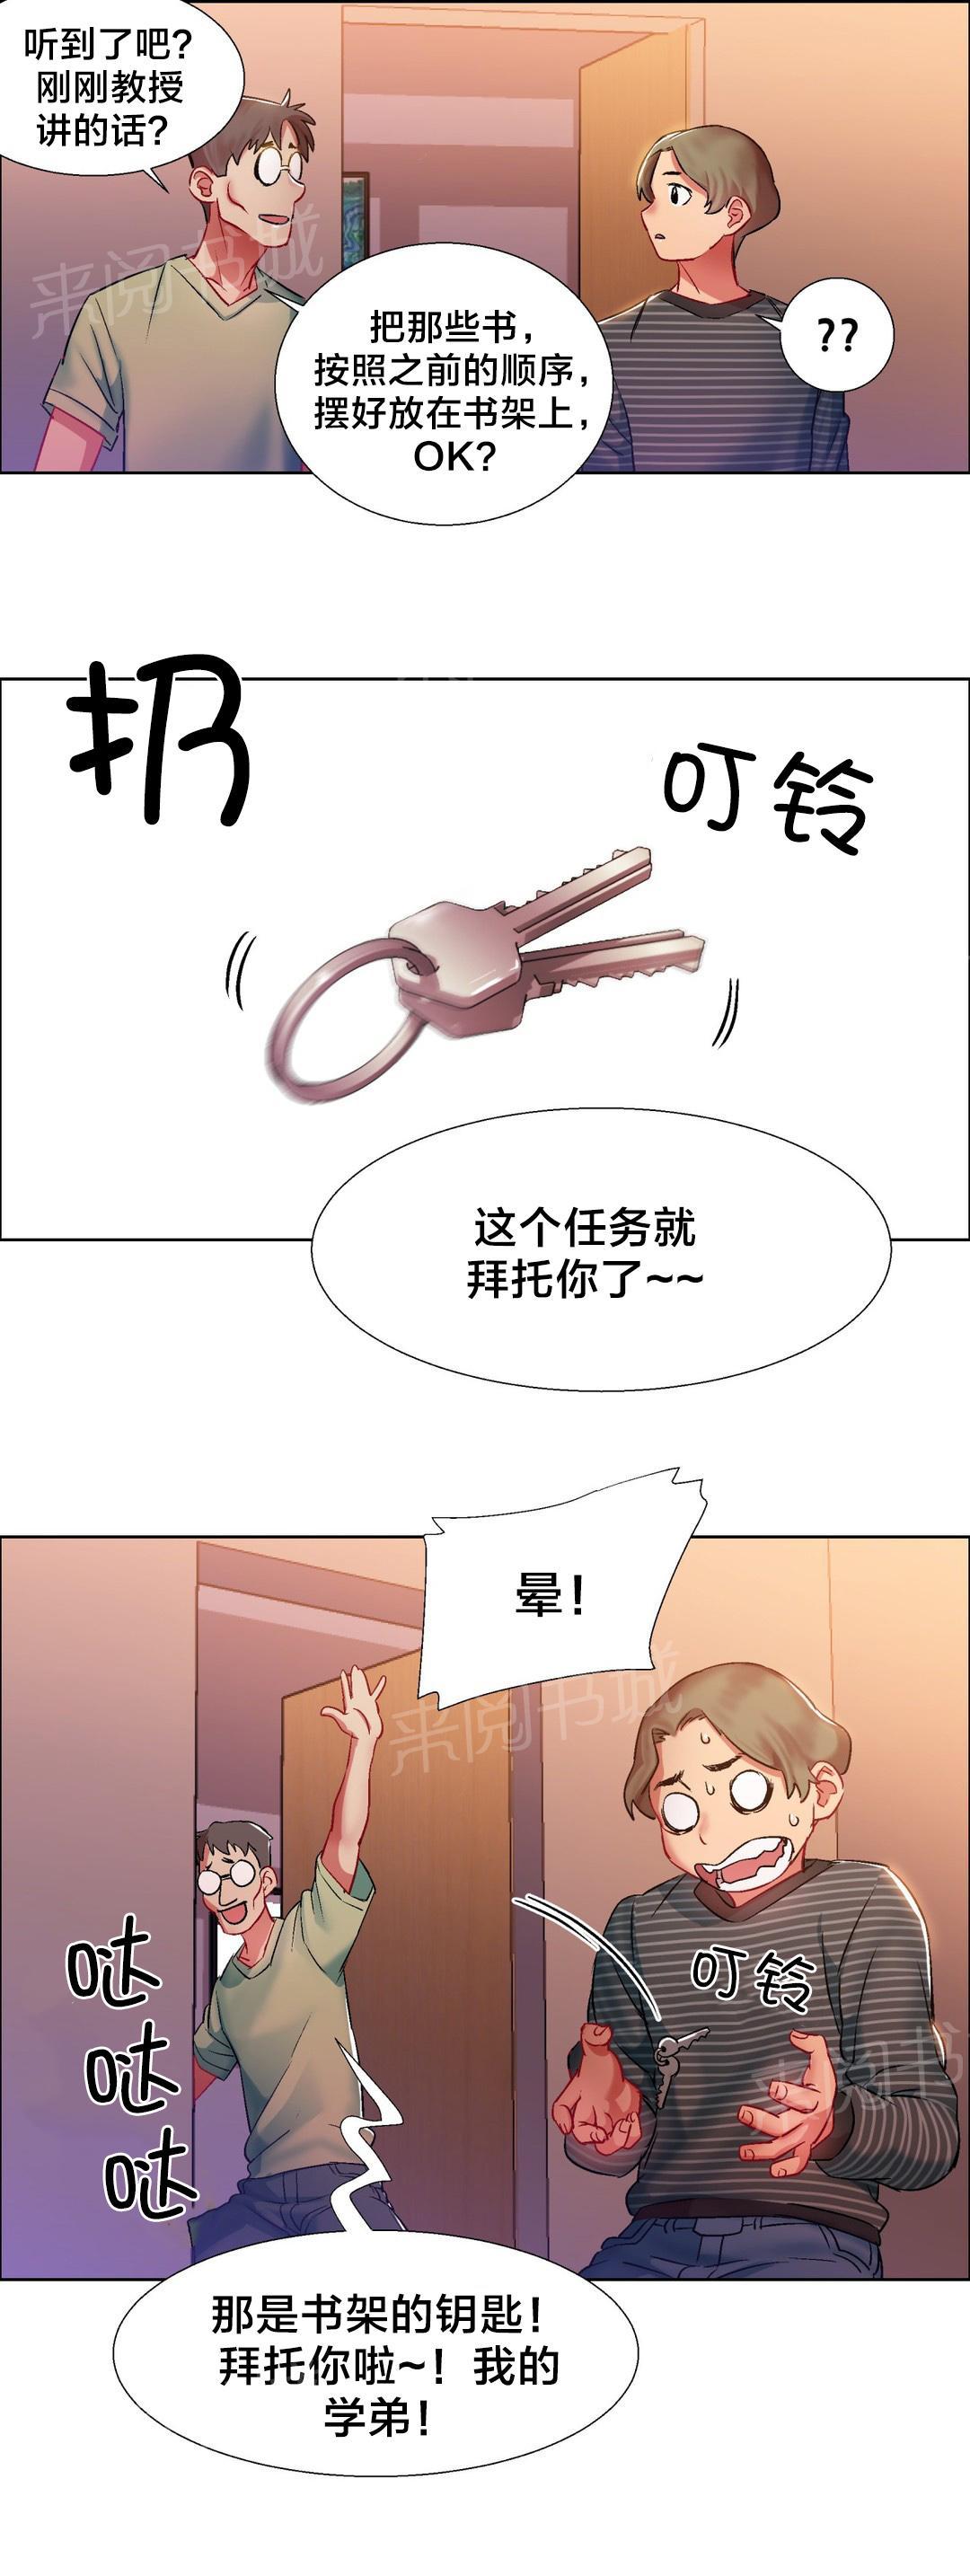 韩国污漫画 香艷小店 第12话 11